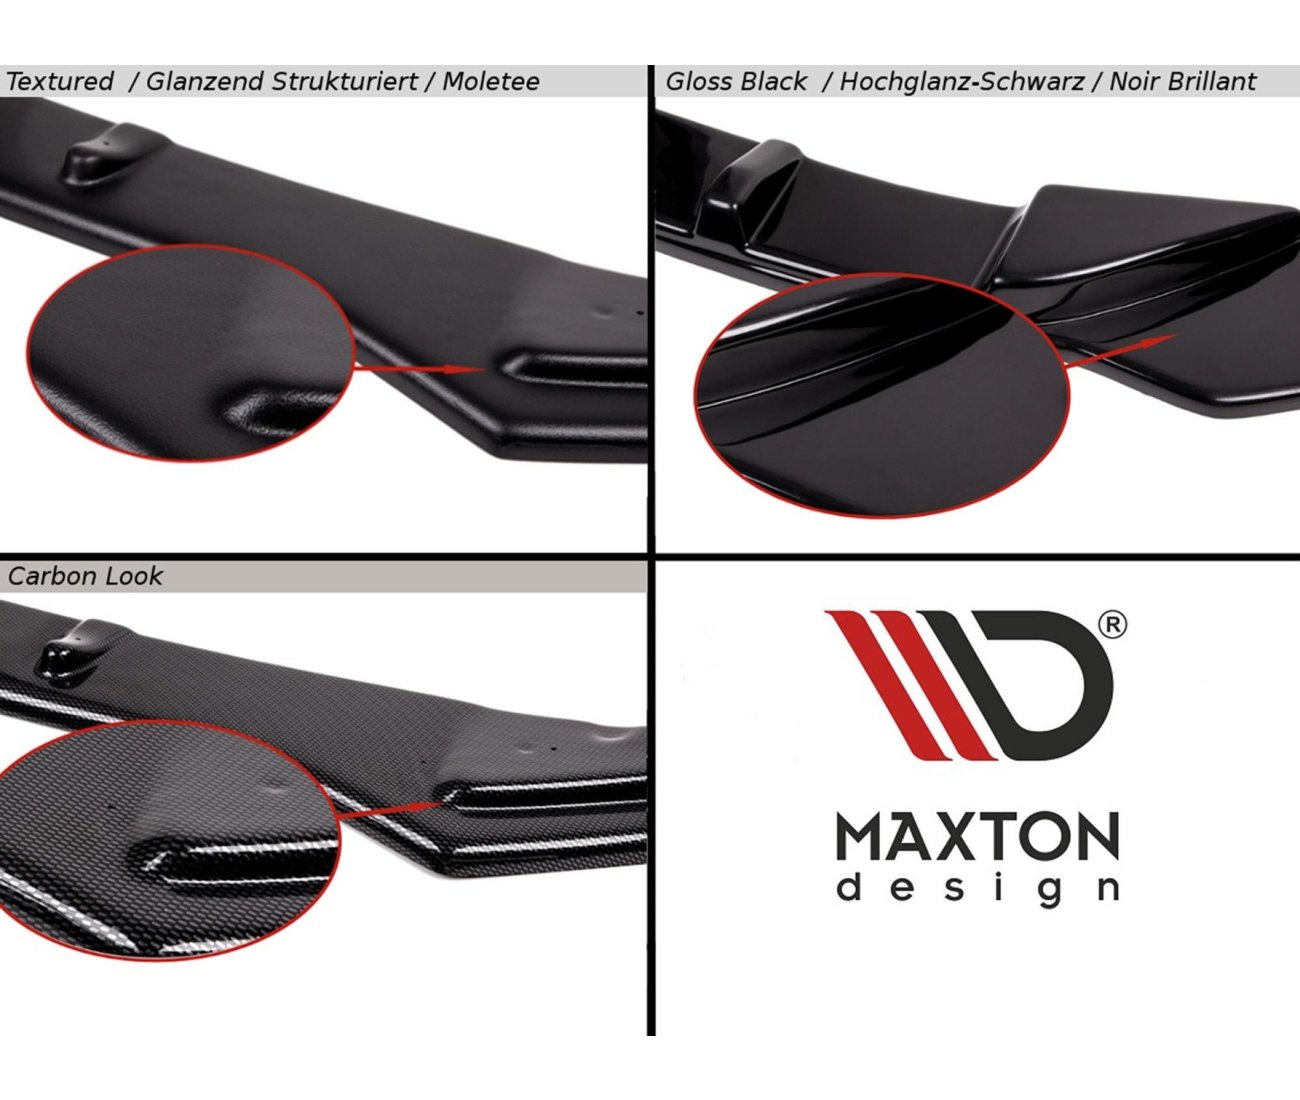 MAXTON DESIGN spoiler tear-off edge for Audi TT RS 8S